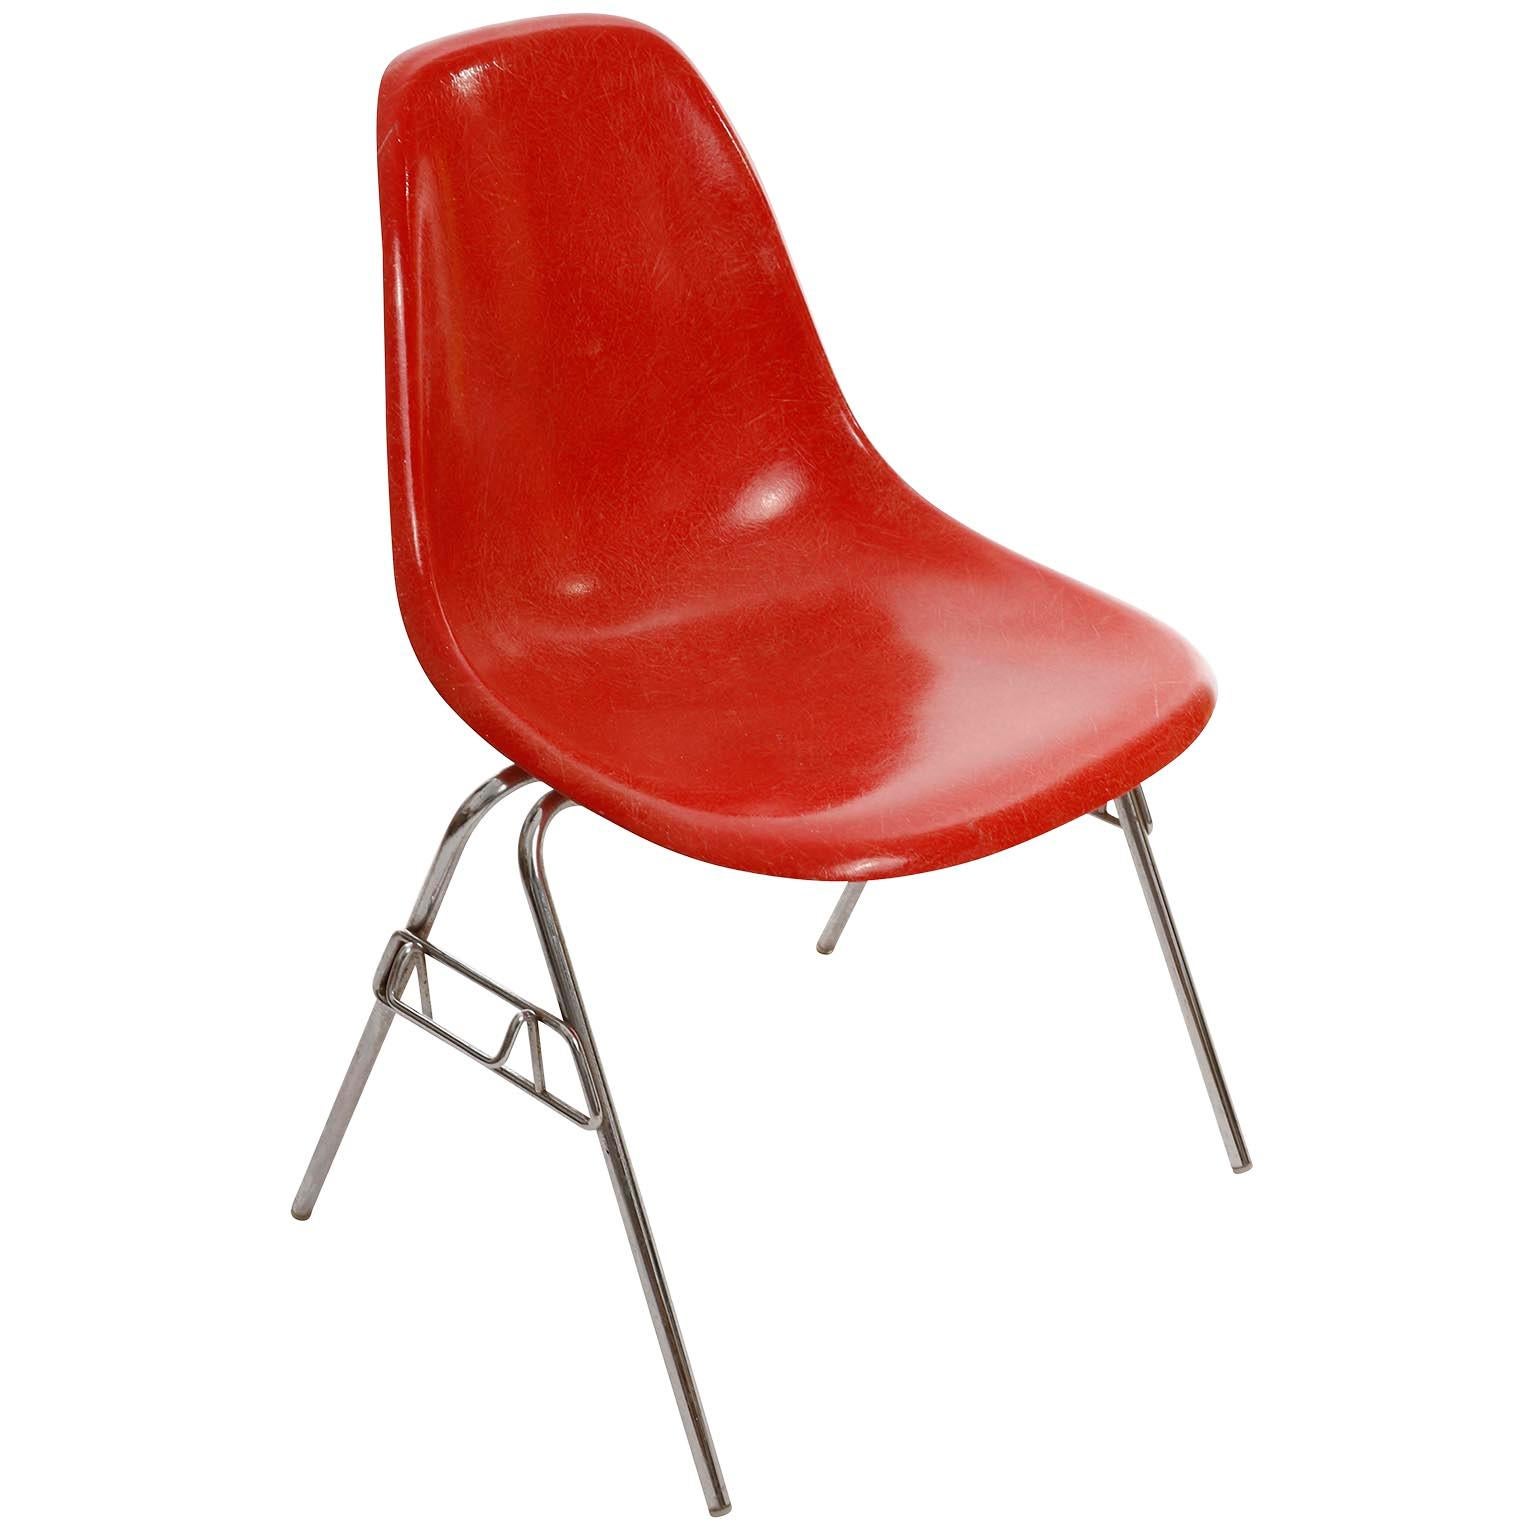 Einer von 22 stapelbaren Esszimmerstühlen von Charles & Ray Eames für Herman Miller, hergestellt in der Mitte des Jahrhunderts, 1974.
Die Stühle sind auf der Unterseite der Sitze mit 